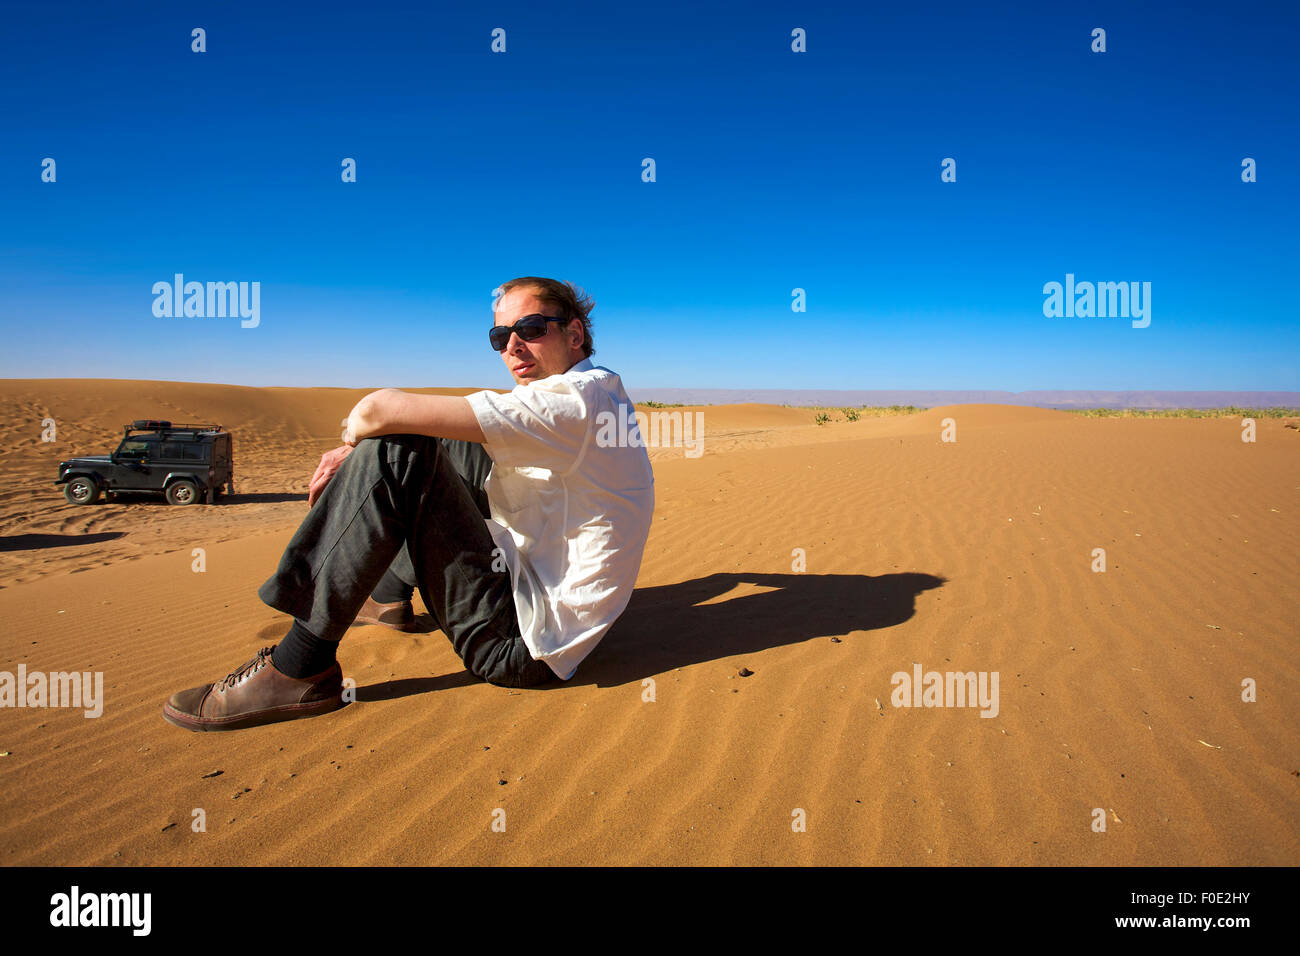 Jeune homme assis sur une dune de sable à Merzouga et regardant la caméra, à l'arrière-plan, il y a un 4x4 véhicule stationné. Banque D'Images